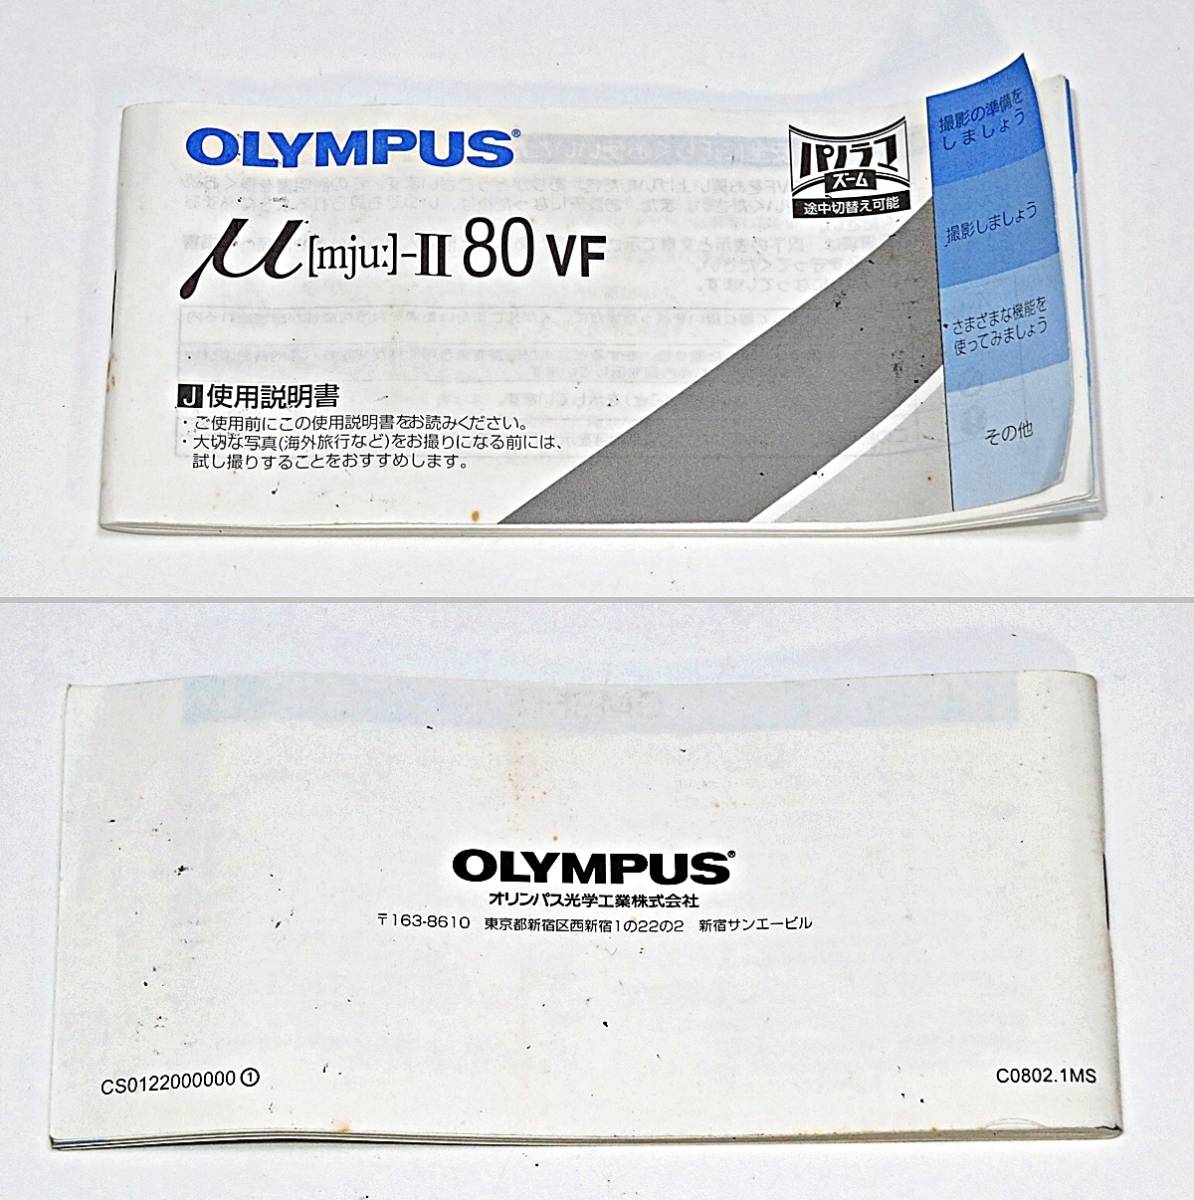 OLYMPUS μ[mju:]-Ⅱ 80VF LENS ZOOM 38-80mm オリンパス ミュー コンパクトカメラ フィルムカメラ 使用説明書 箱付き 003FUZI06_画像5